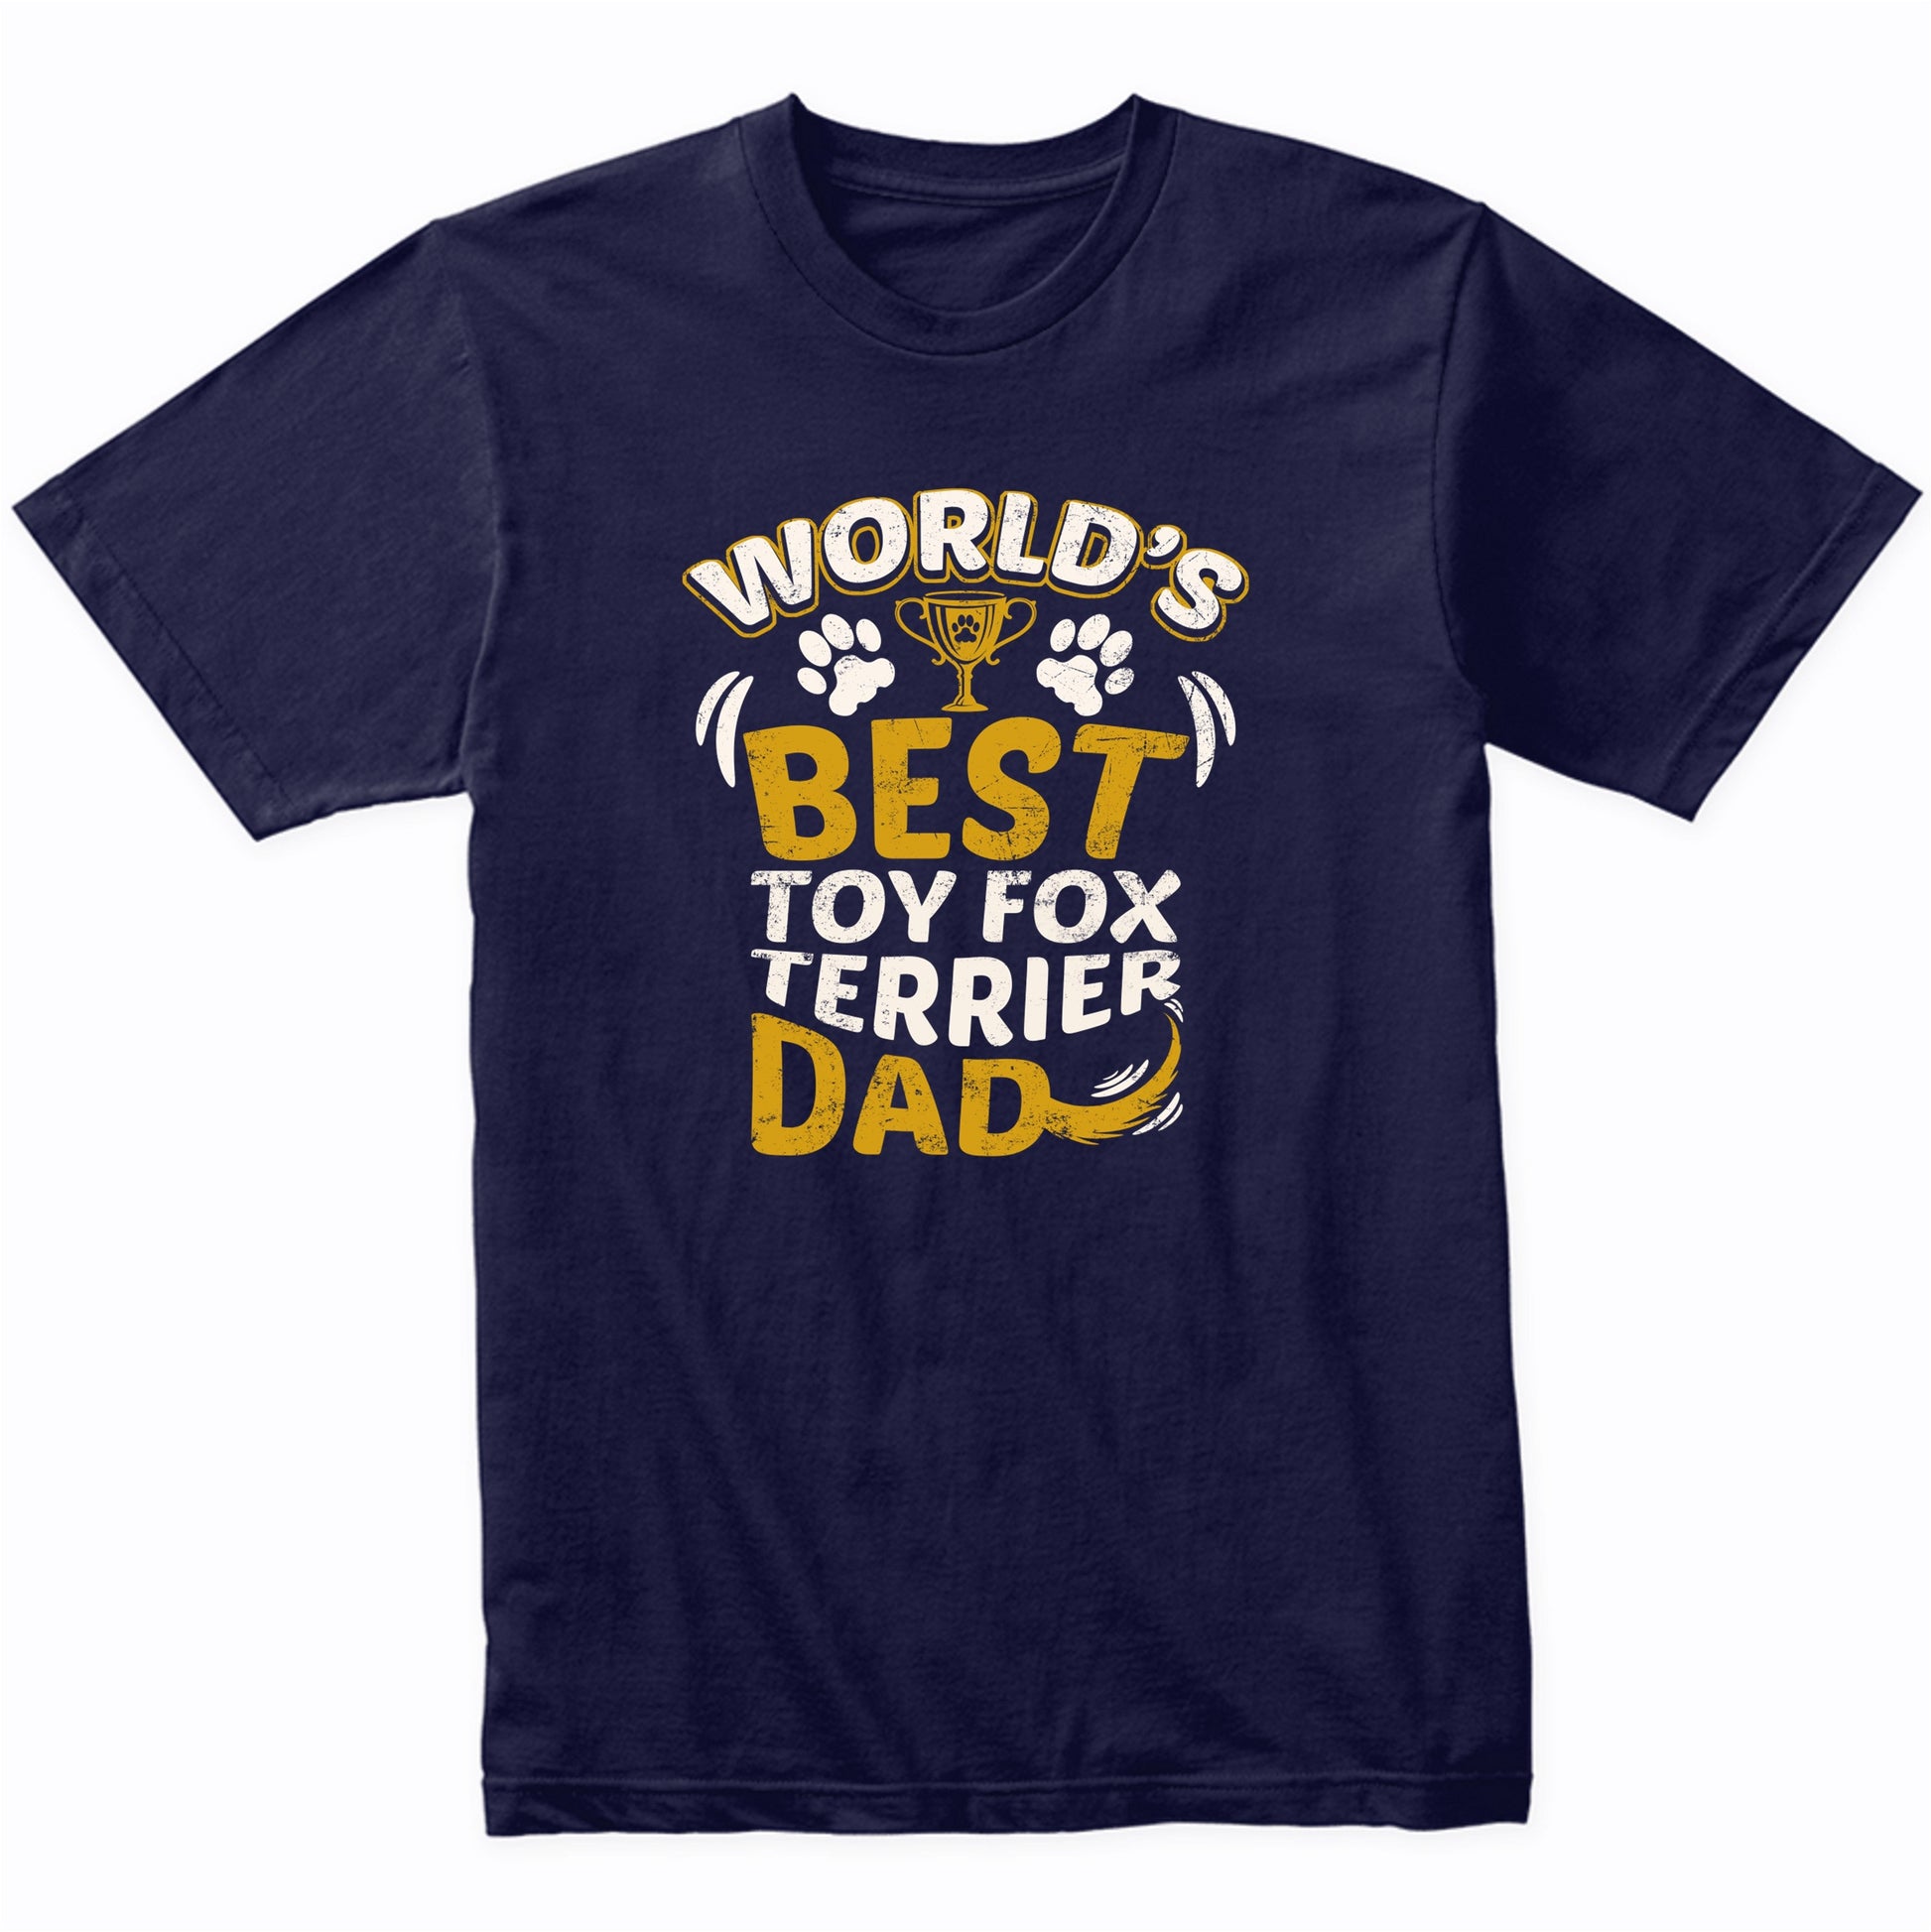 World's Best Toy Fox Terrier Dad Graphic T-Shirt